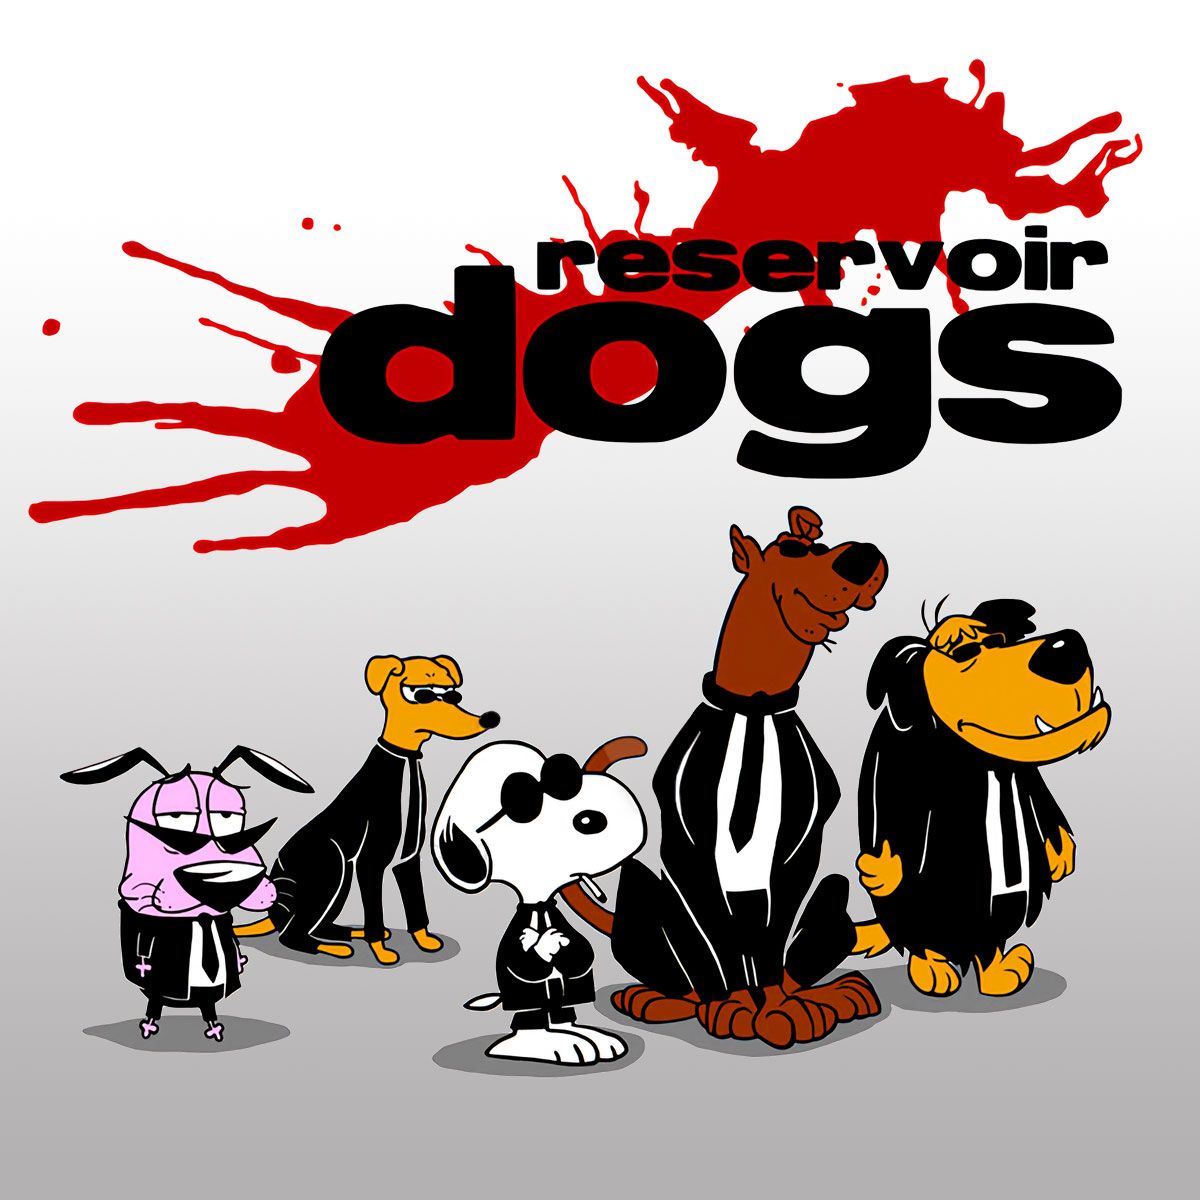 Nome do produto: Reservoir Dogs